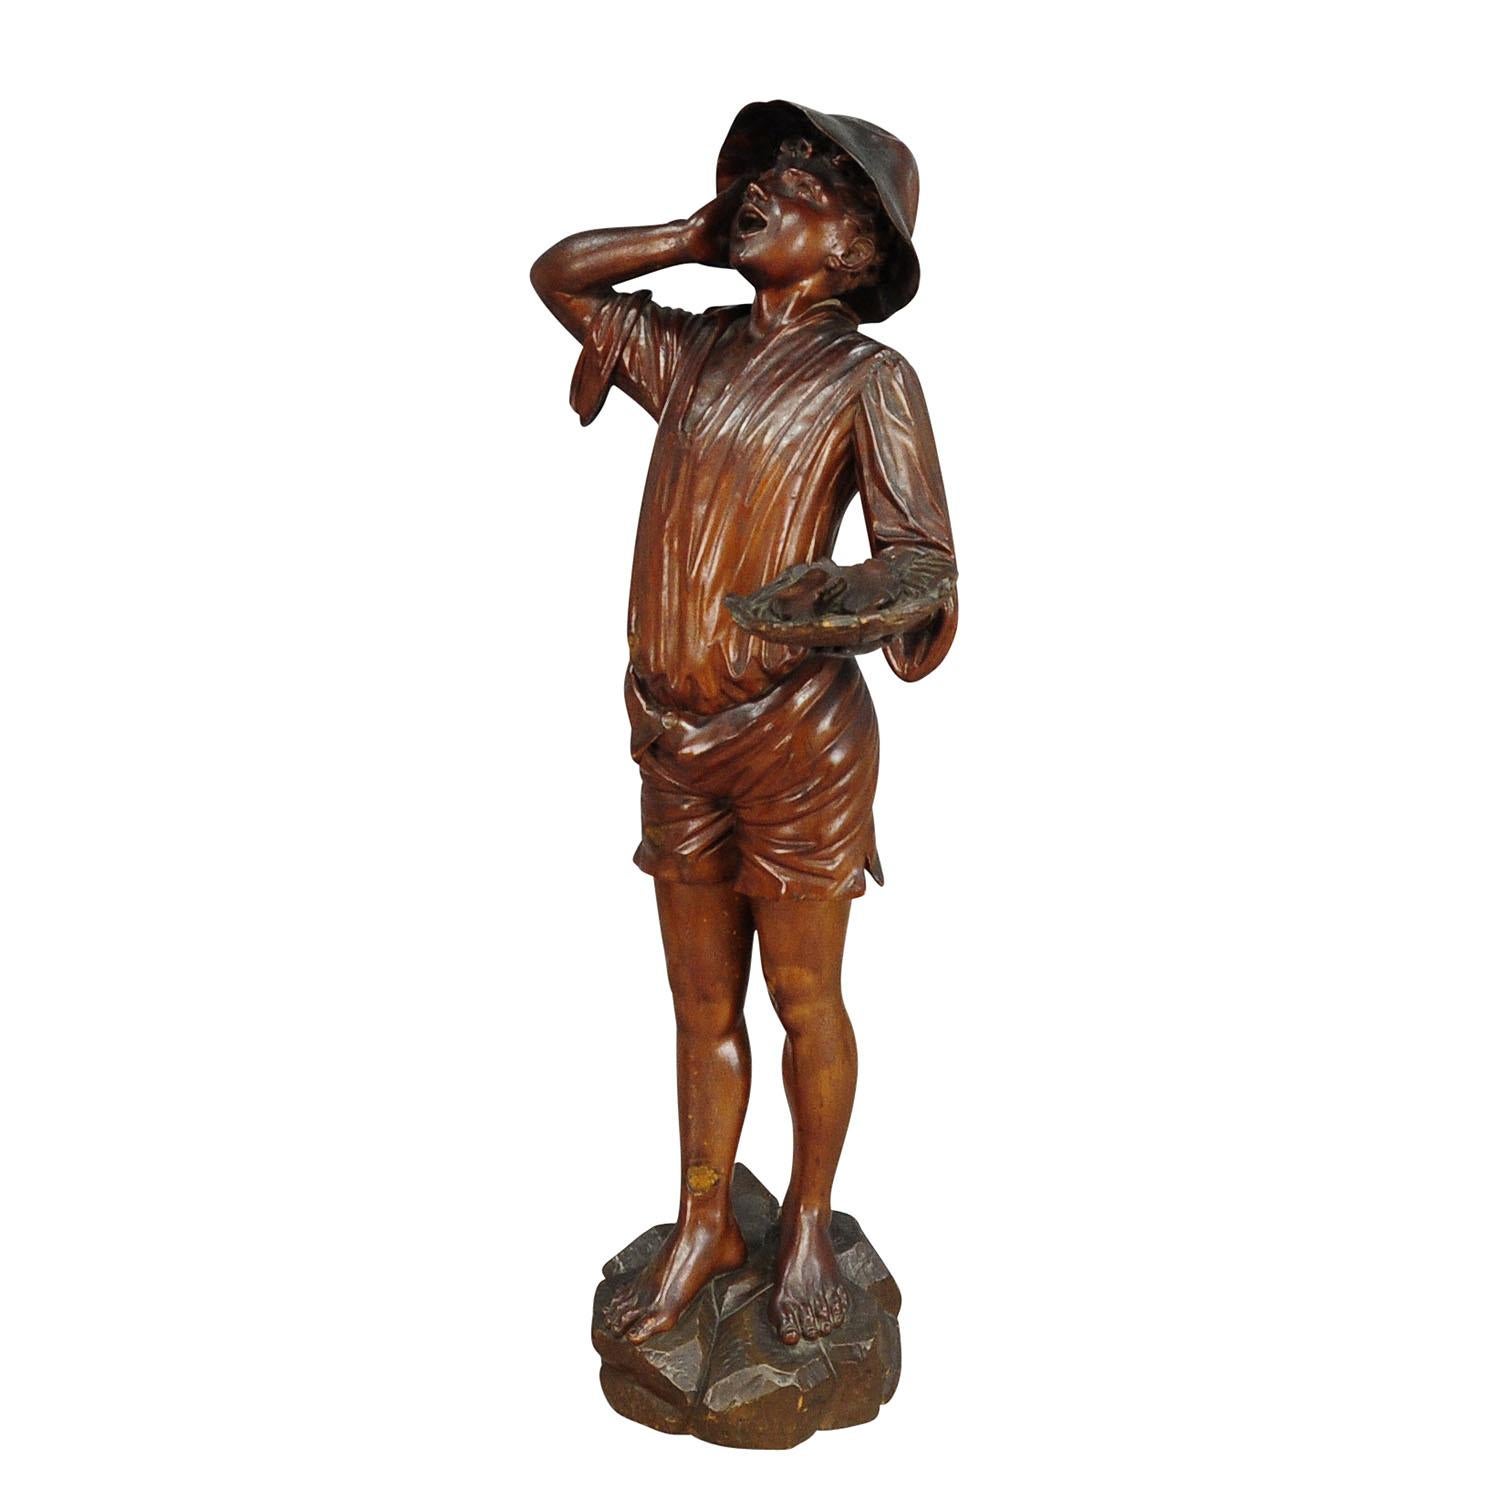 Statue ancienne en bois sculpté d'un jeune pêcheur

Grande statue antique en bois sculpté représentant un pêcheur présentant son butin. Fabriqué en Italie, vers 1880. Le bord du chapeau est restauré.

La tradition de la sculpture sur bois, qui